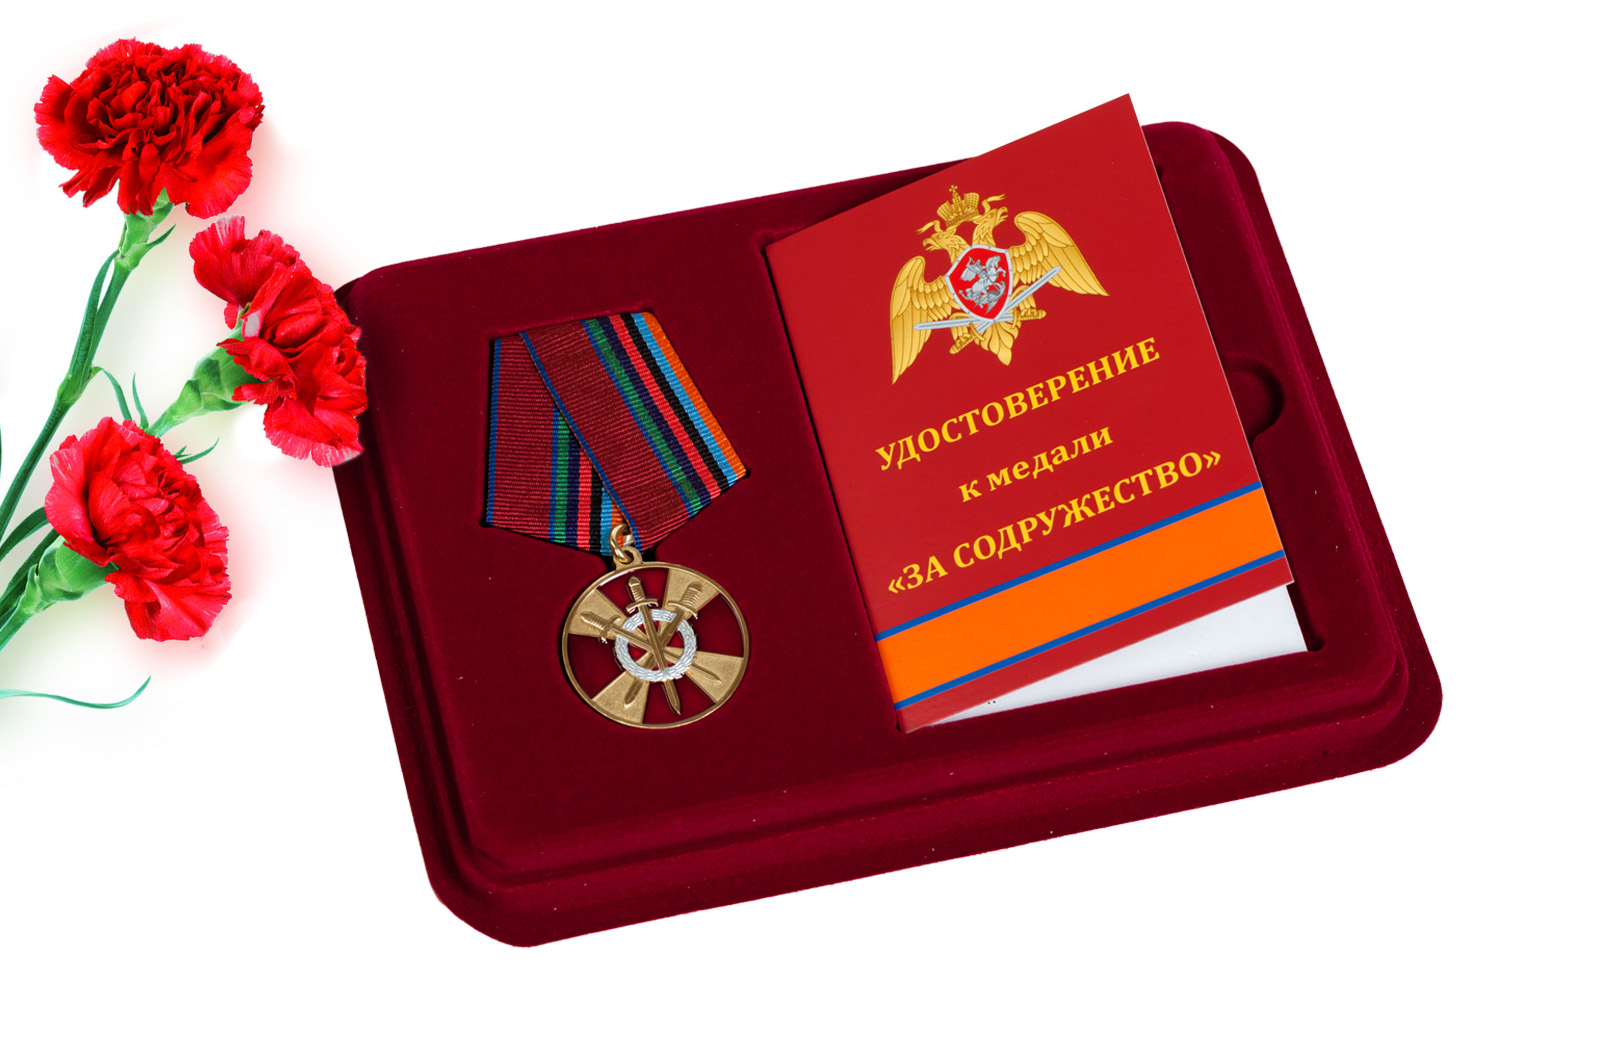 Купить медаль За боевое содружество Росгвардия по экономичной цене